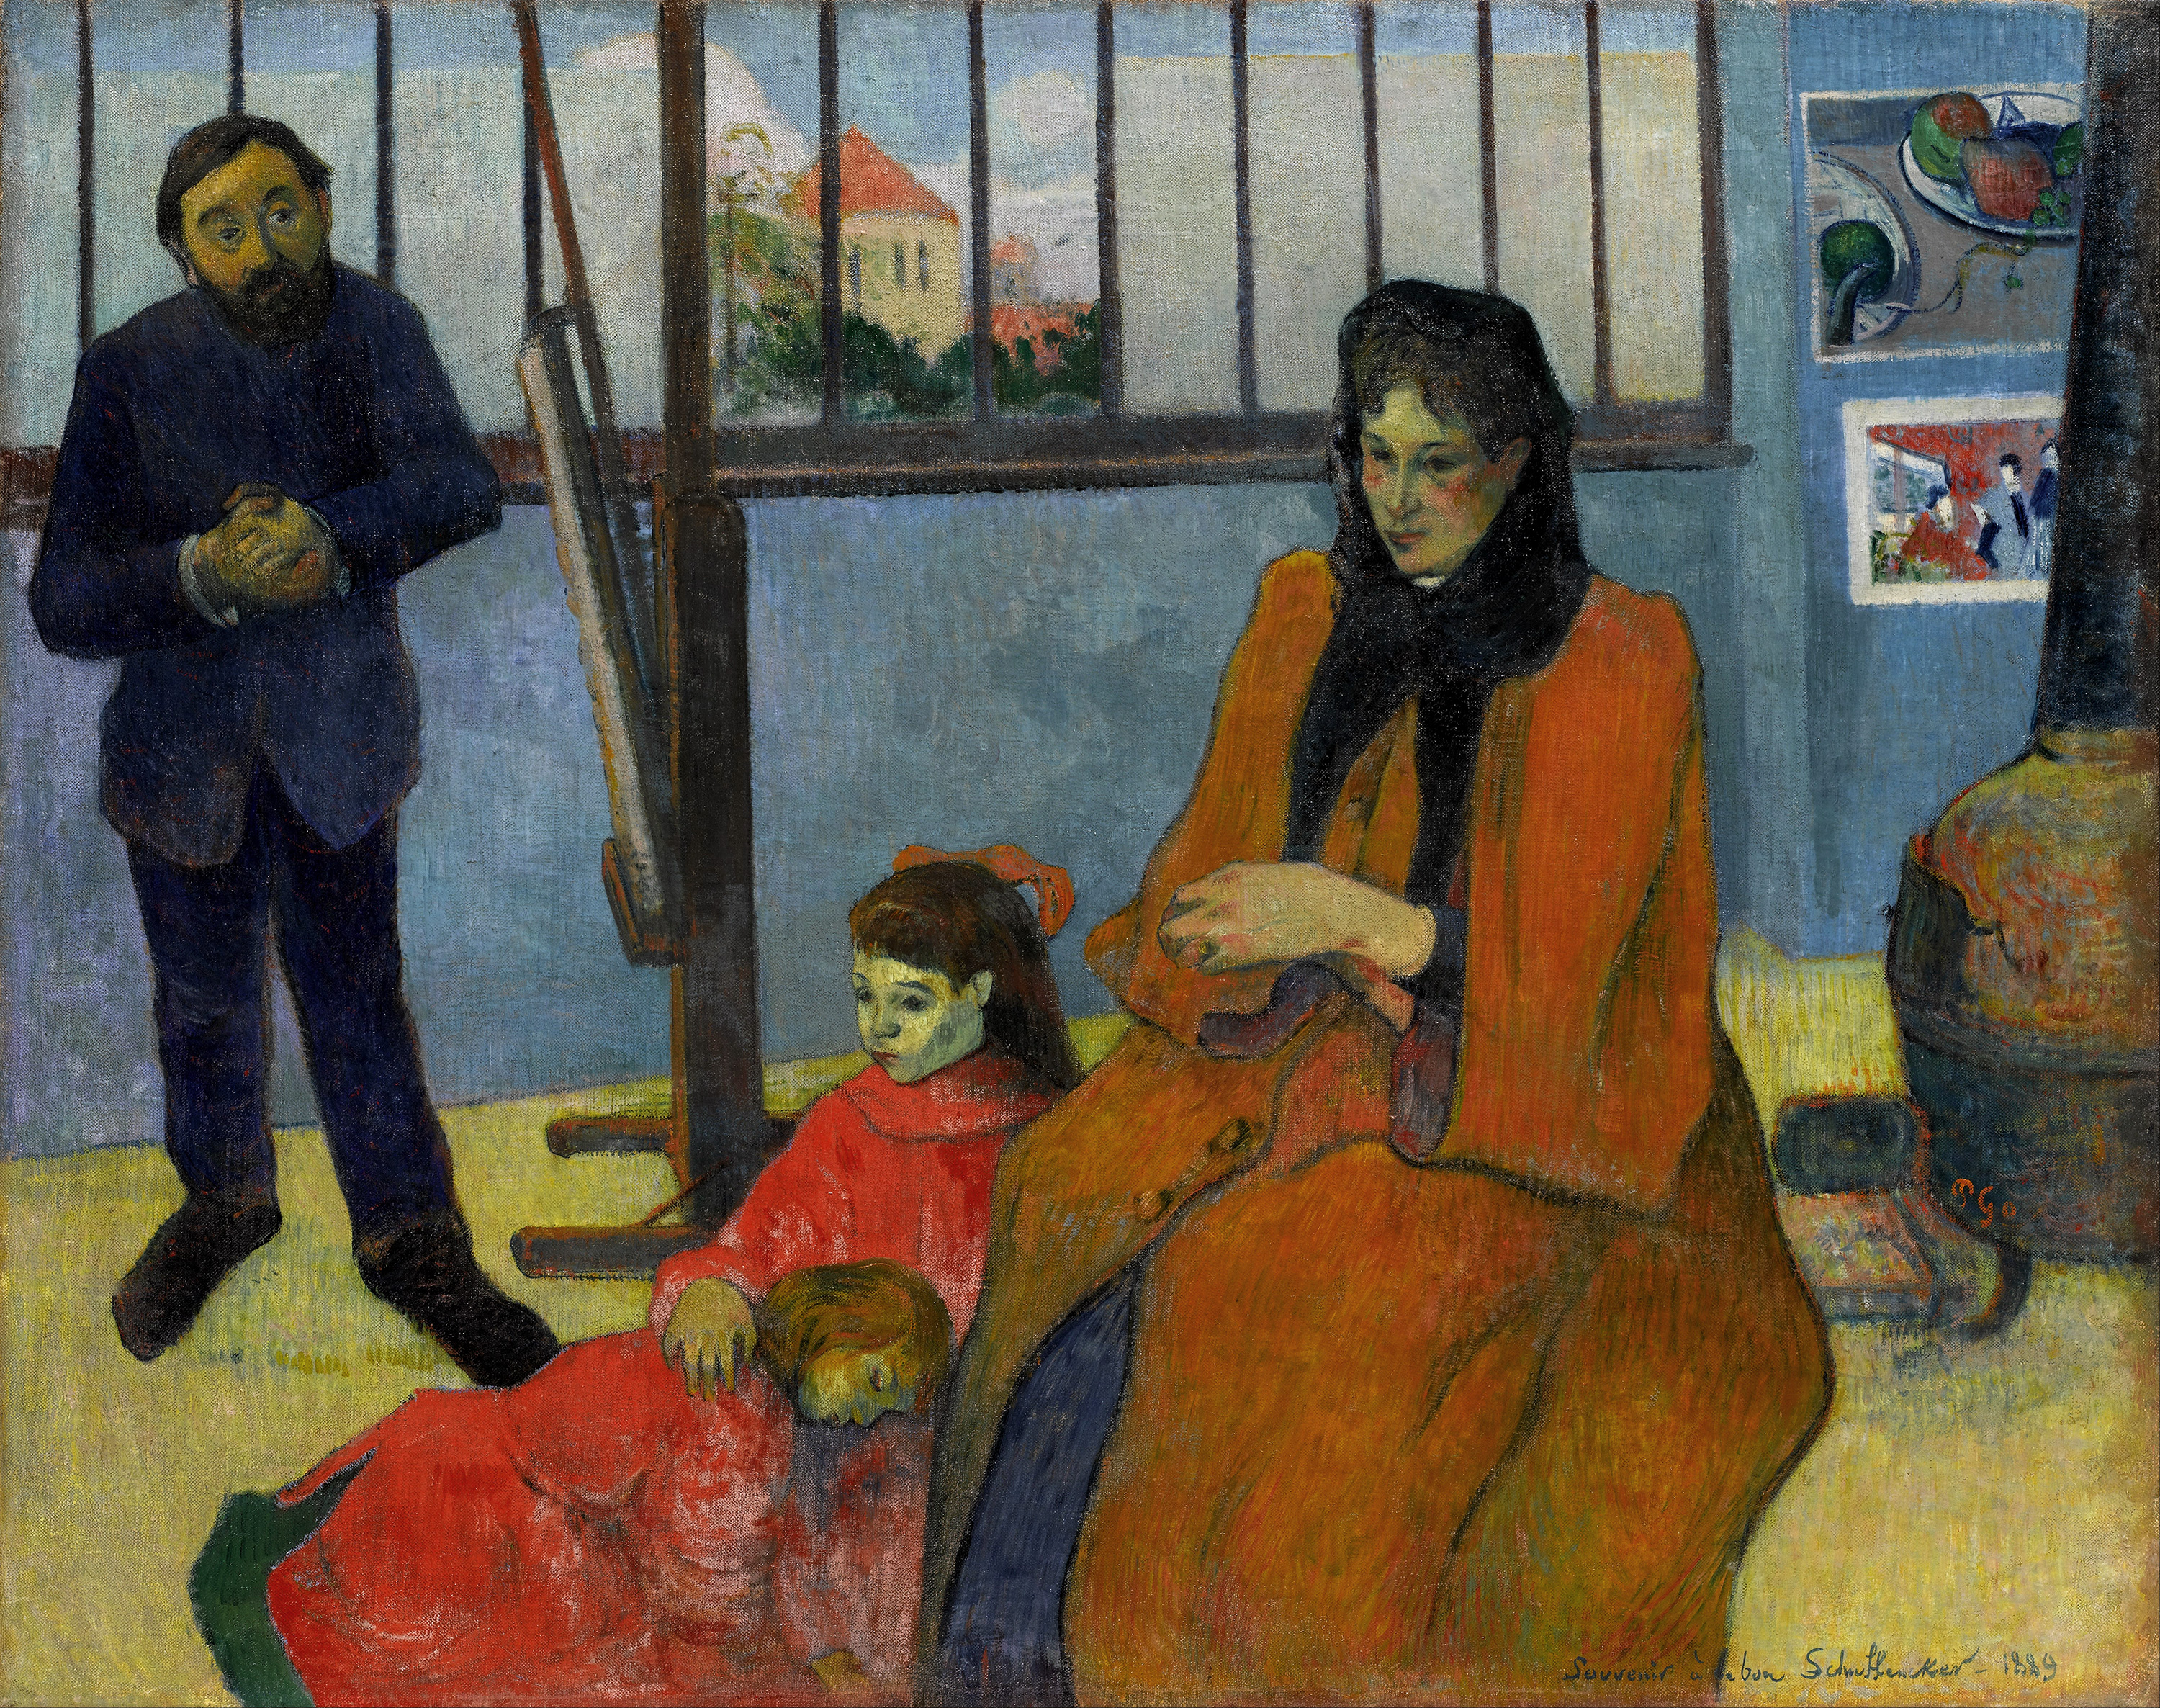 Paul gauguin, La famille Schuffenecker, 1889